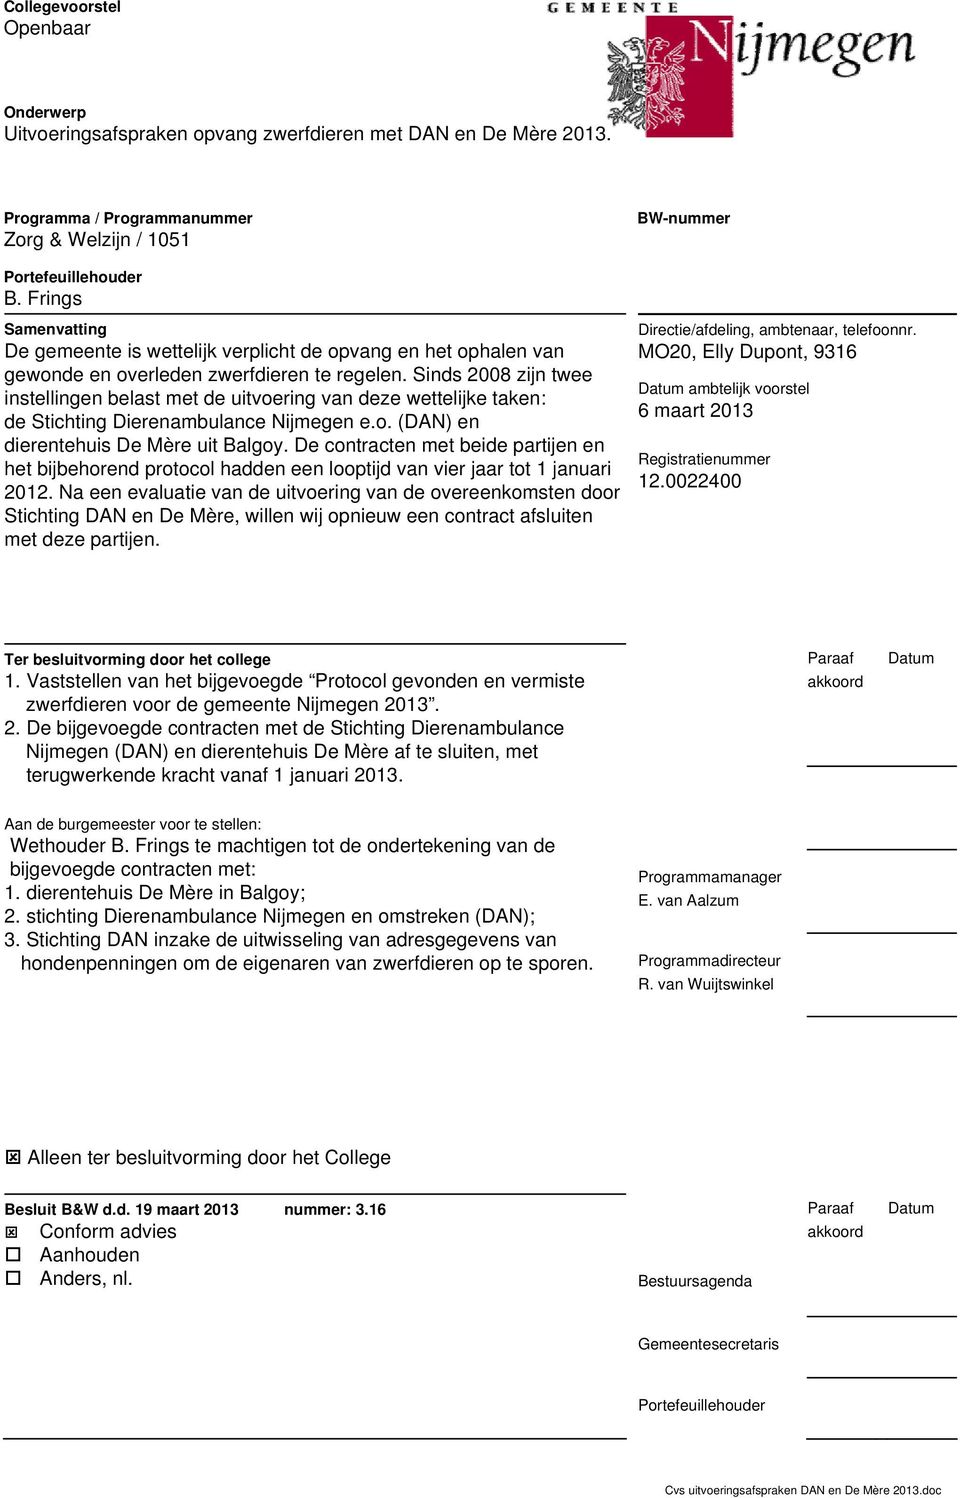 Sinds 2008 zijn twee instellingen belast met de uitvoering van deze wettelijke taken: de Stichting Dierenambulance Nijmegen e.o. (DAN) en dierentehuis De Mère uit Balgoy.